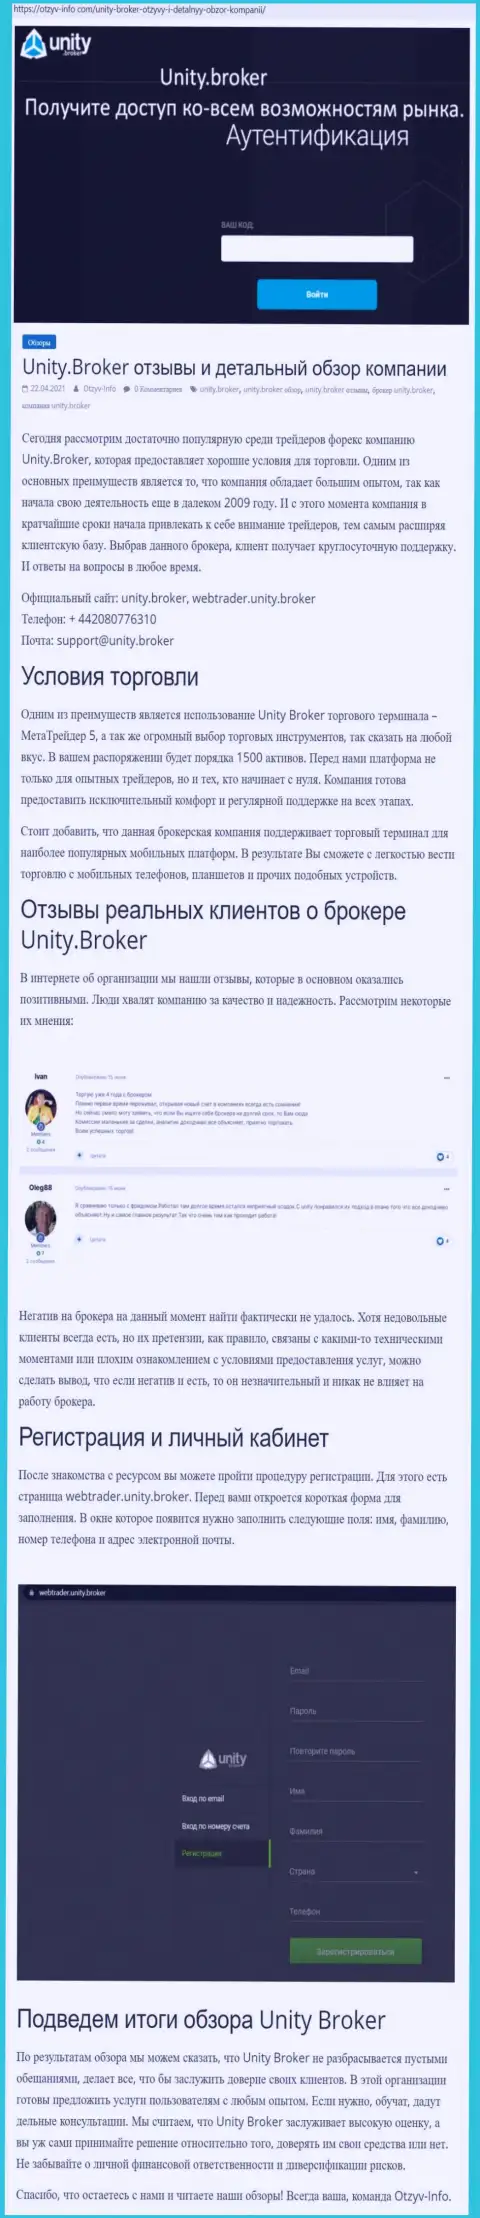 Обзор работы форекс-дилинговой организации Unity Broker на информационном сервисе Отзыв Инфо Ком